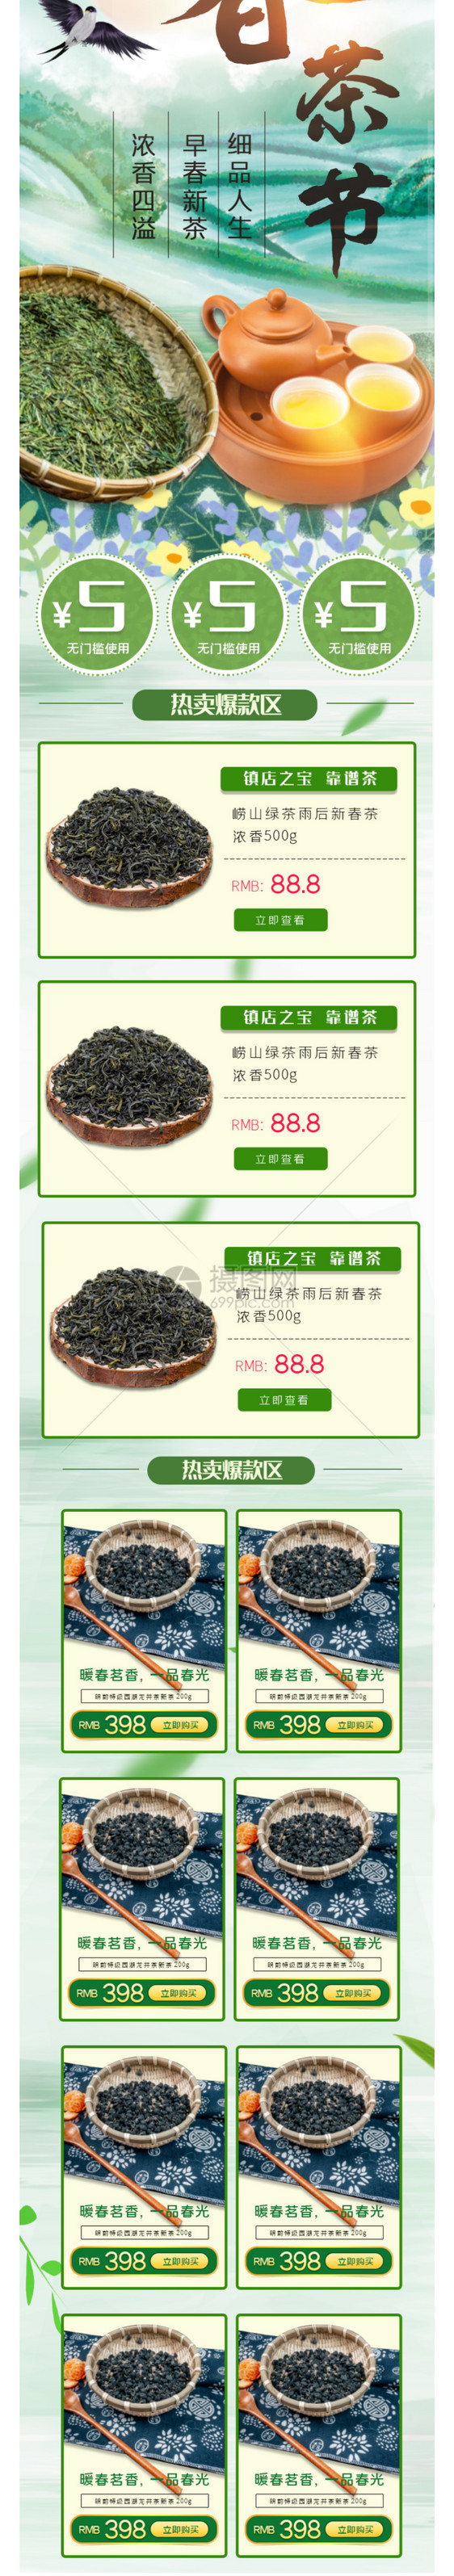 绿色春茶节淘宝手机详情页模板图片